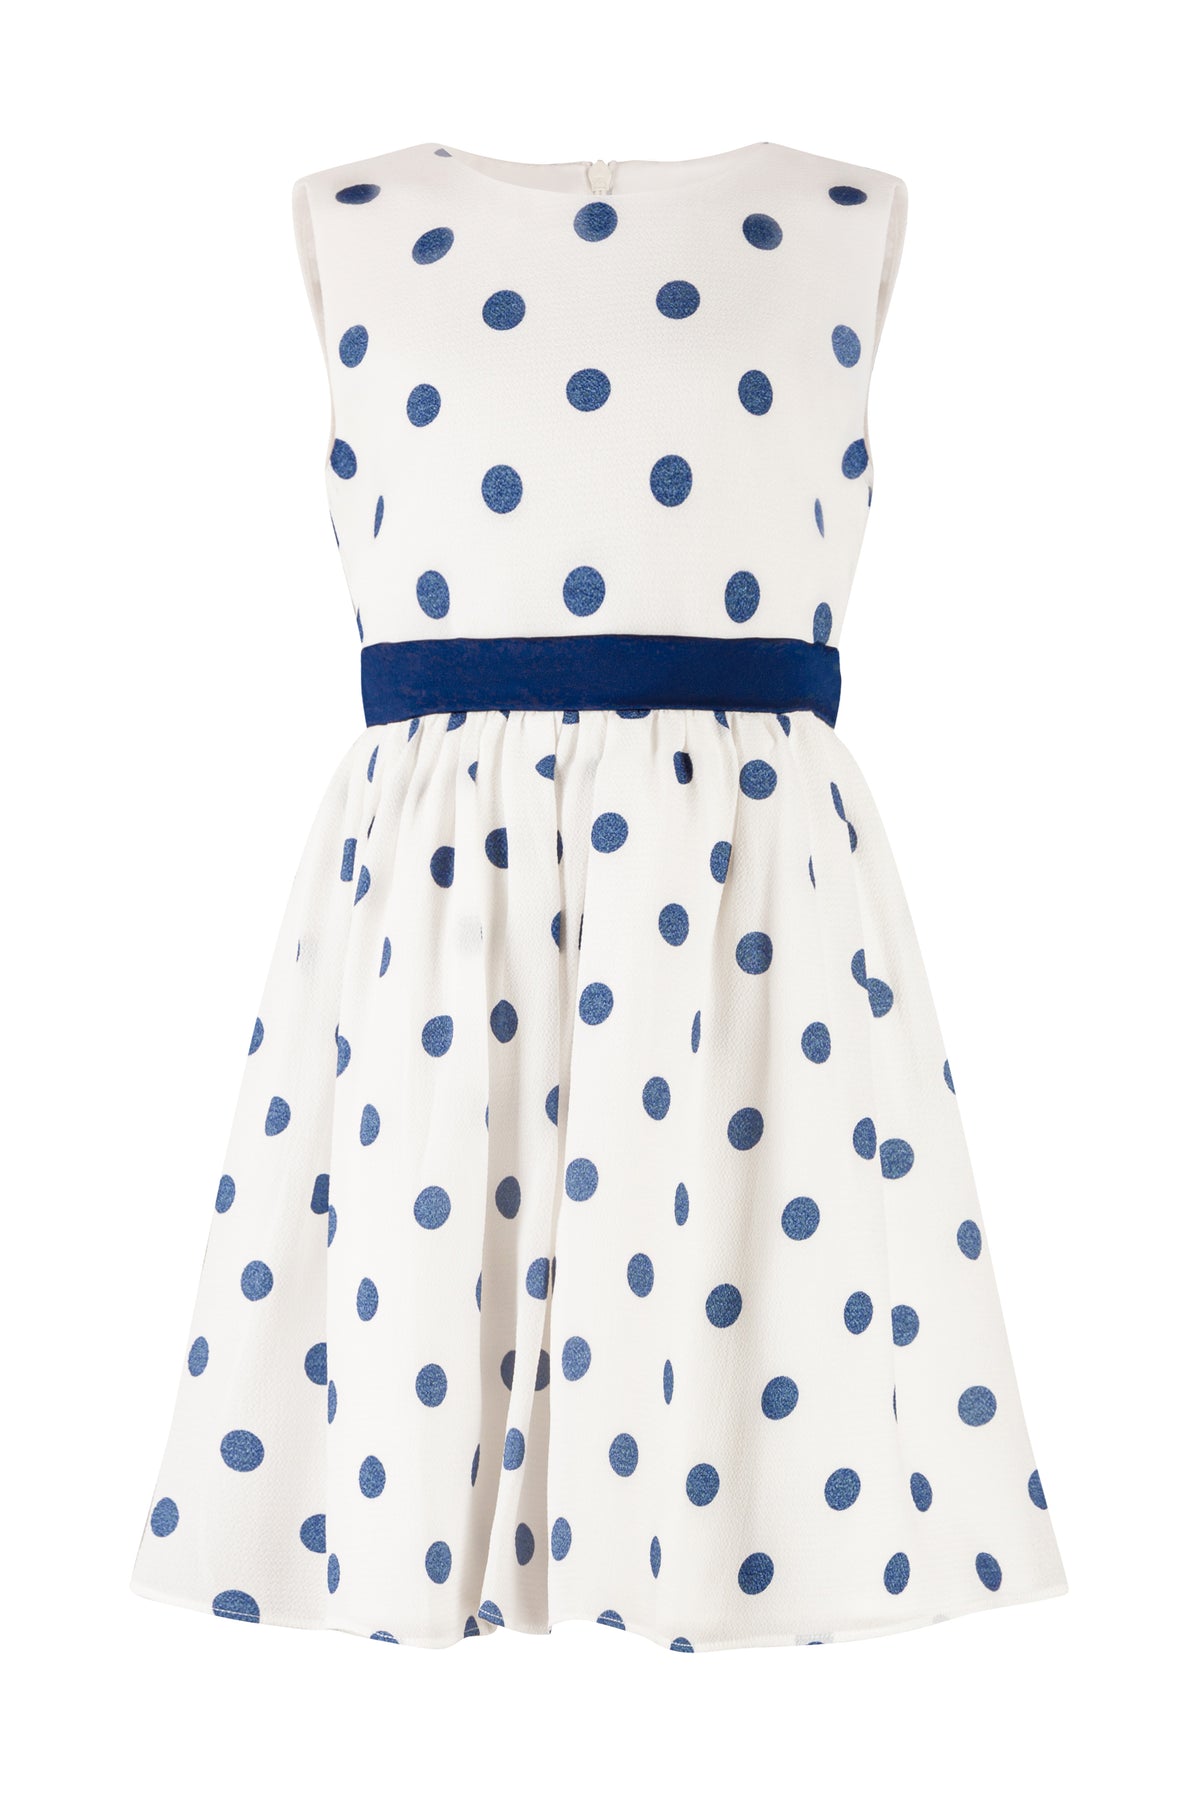 Mädchen Kleid Weiß Blau Punkte 524145 Navy